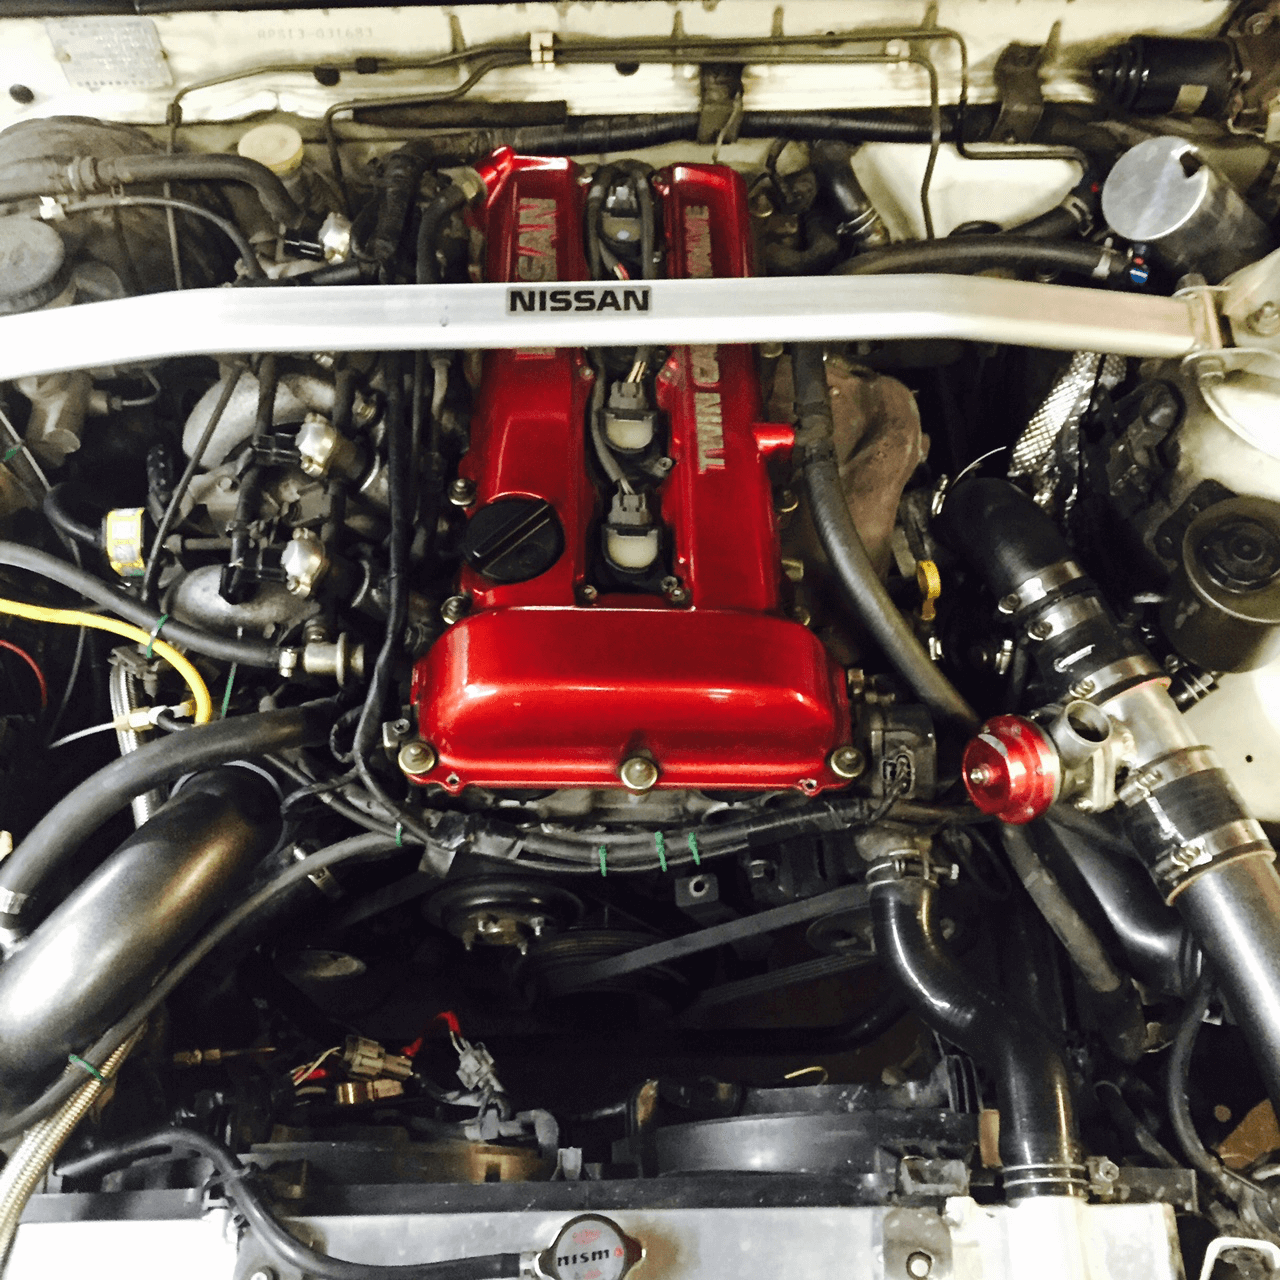 Nissan SR20DET Engine, Nissan Aftermarket Parts